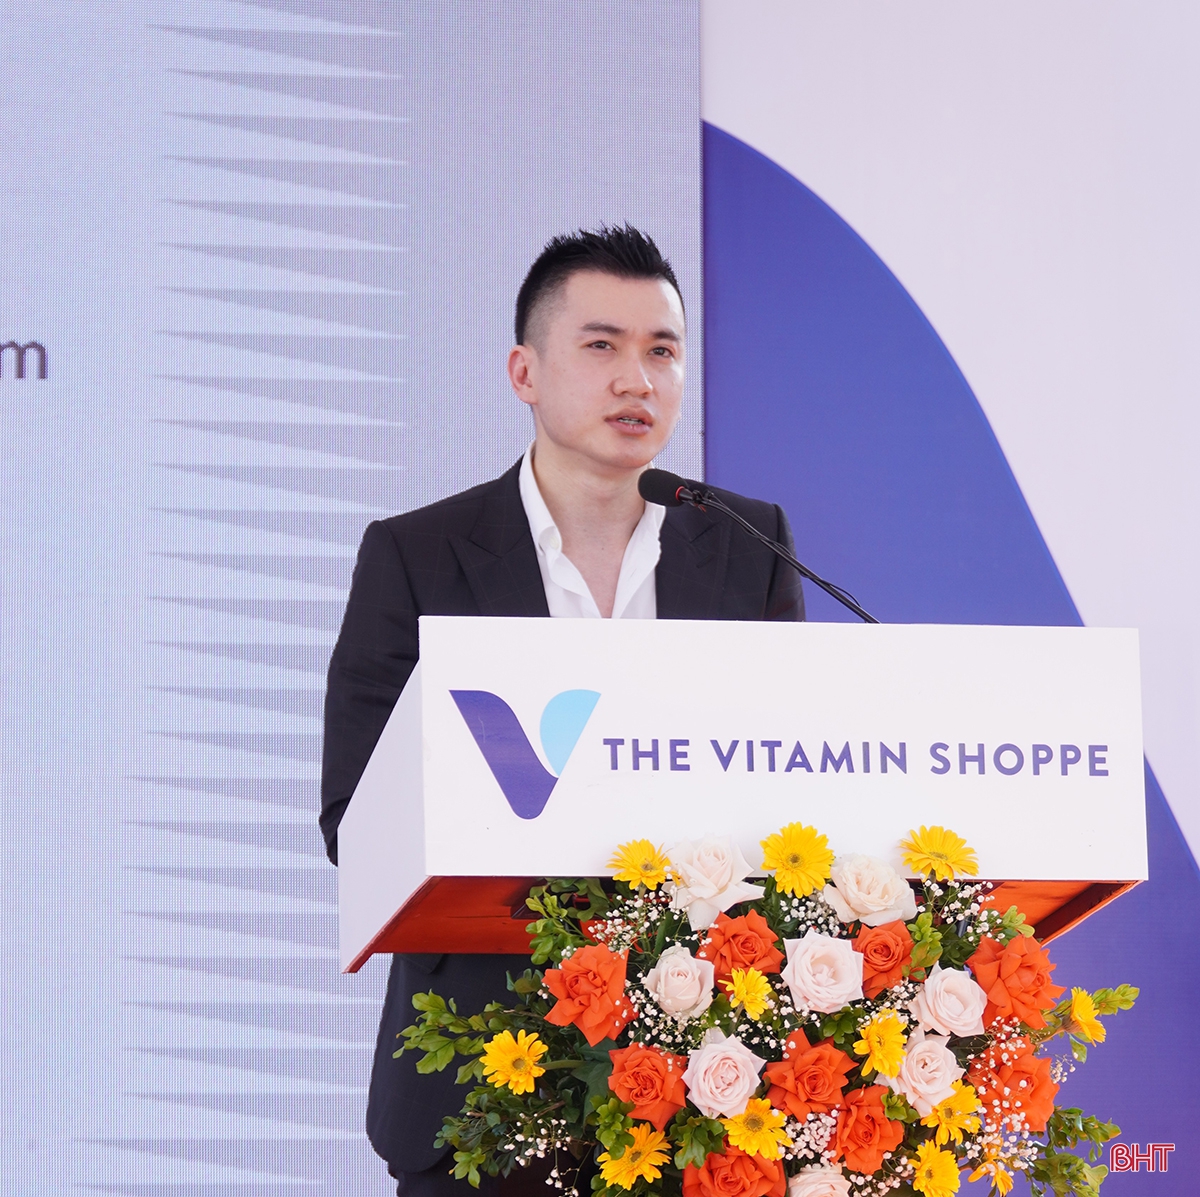 Mr Hoàng Anh - Phó Chủ tịch Kim Liên Group, CEO The Vitamin Shoppe Việt Nam phát biểu tại lễ khai trương